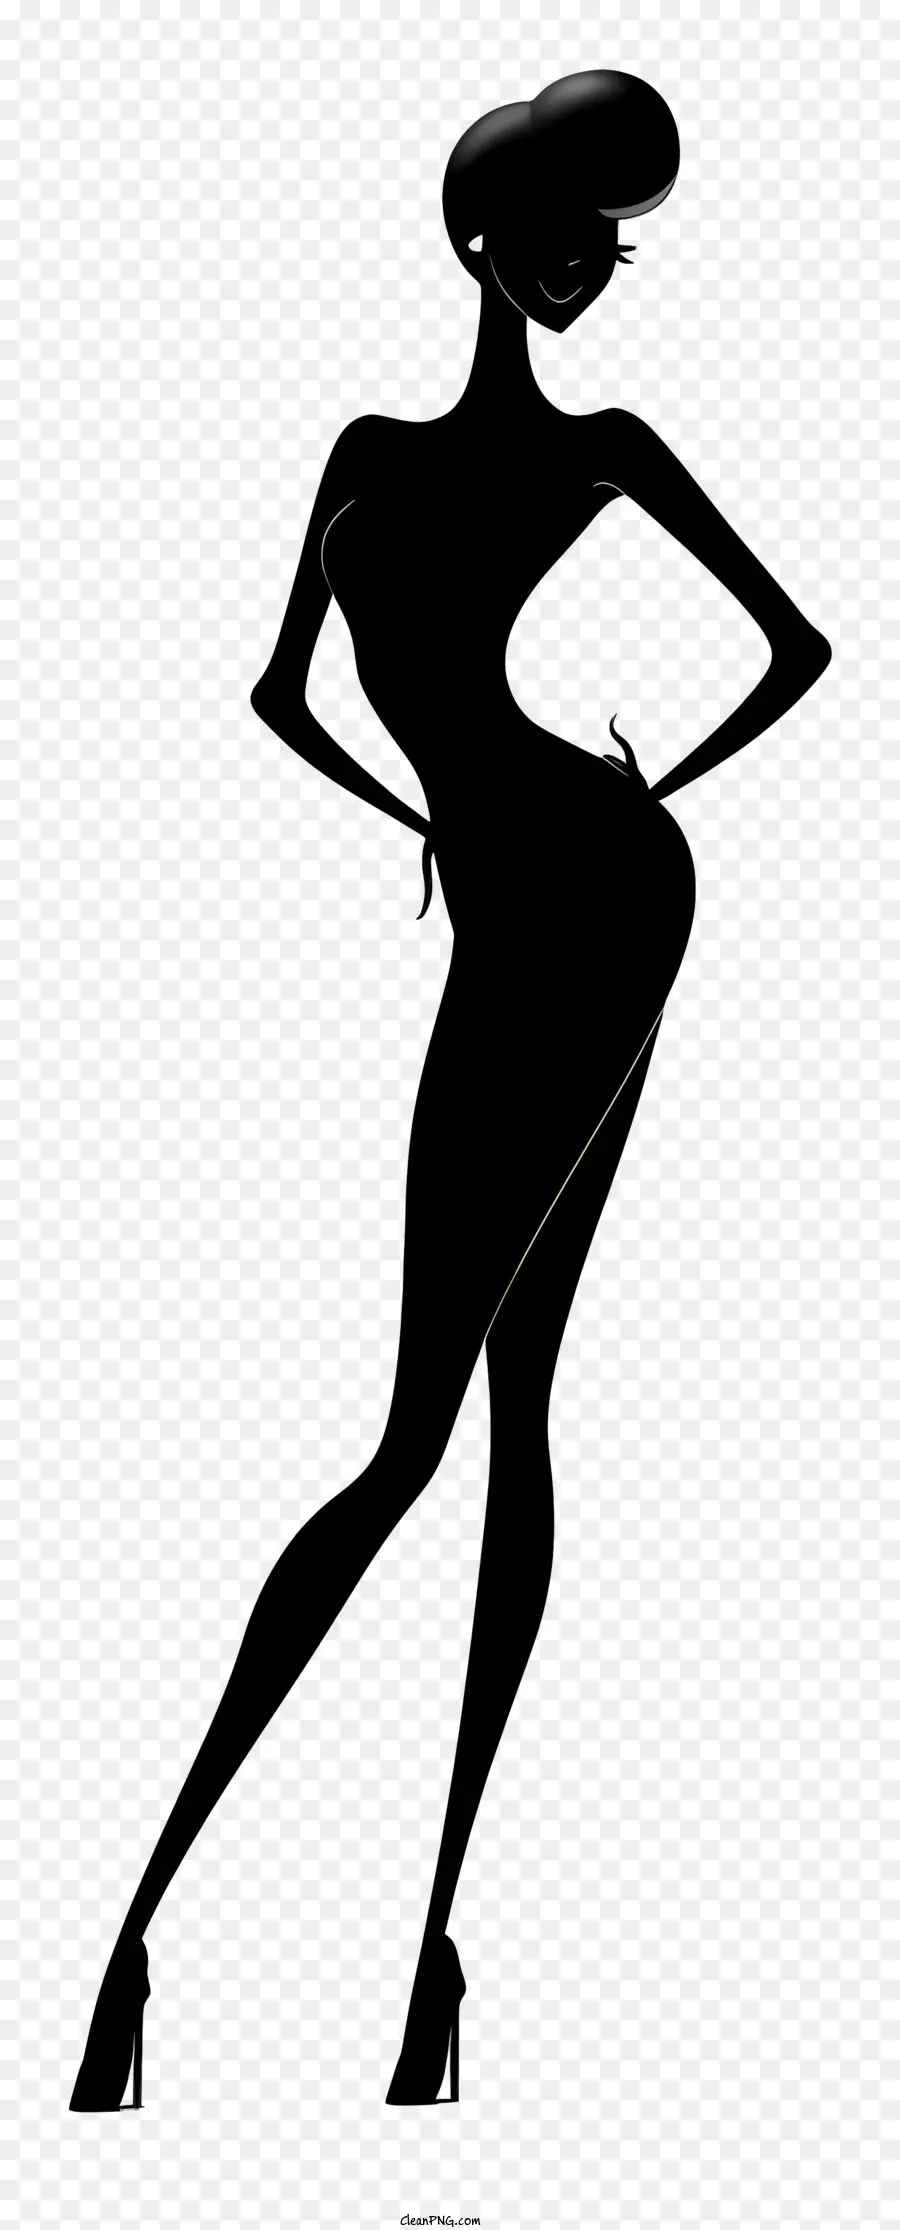 Silhouette Sexy Woman Black Dress Bih Scollo basso - Immagine realistica in bianco e nero della donna